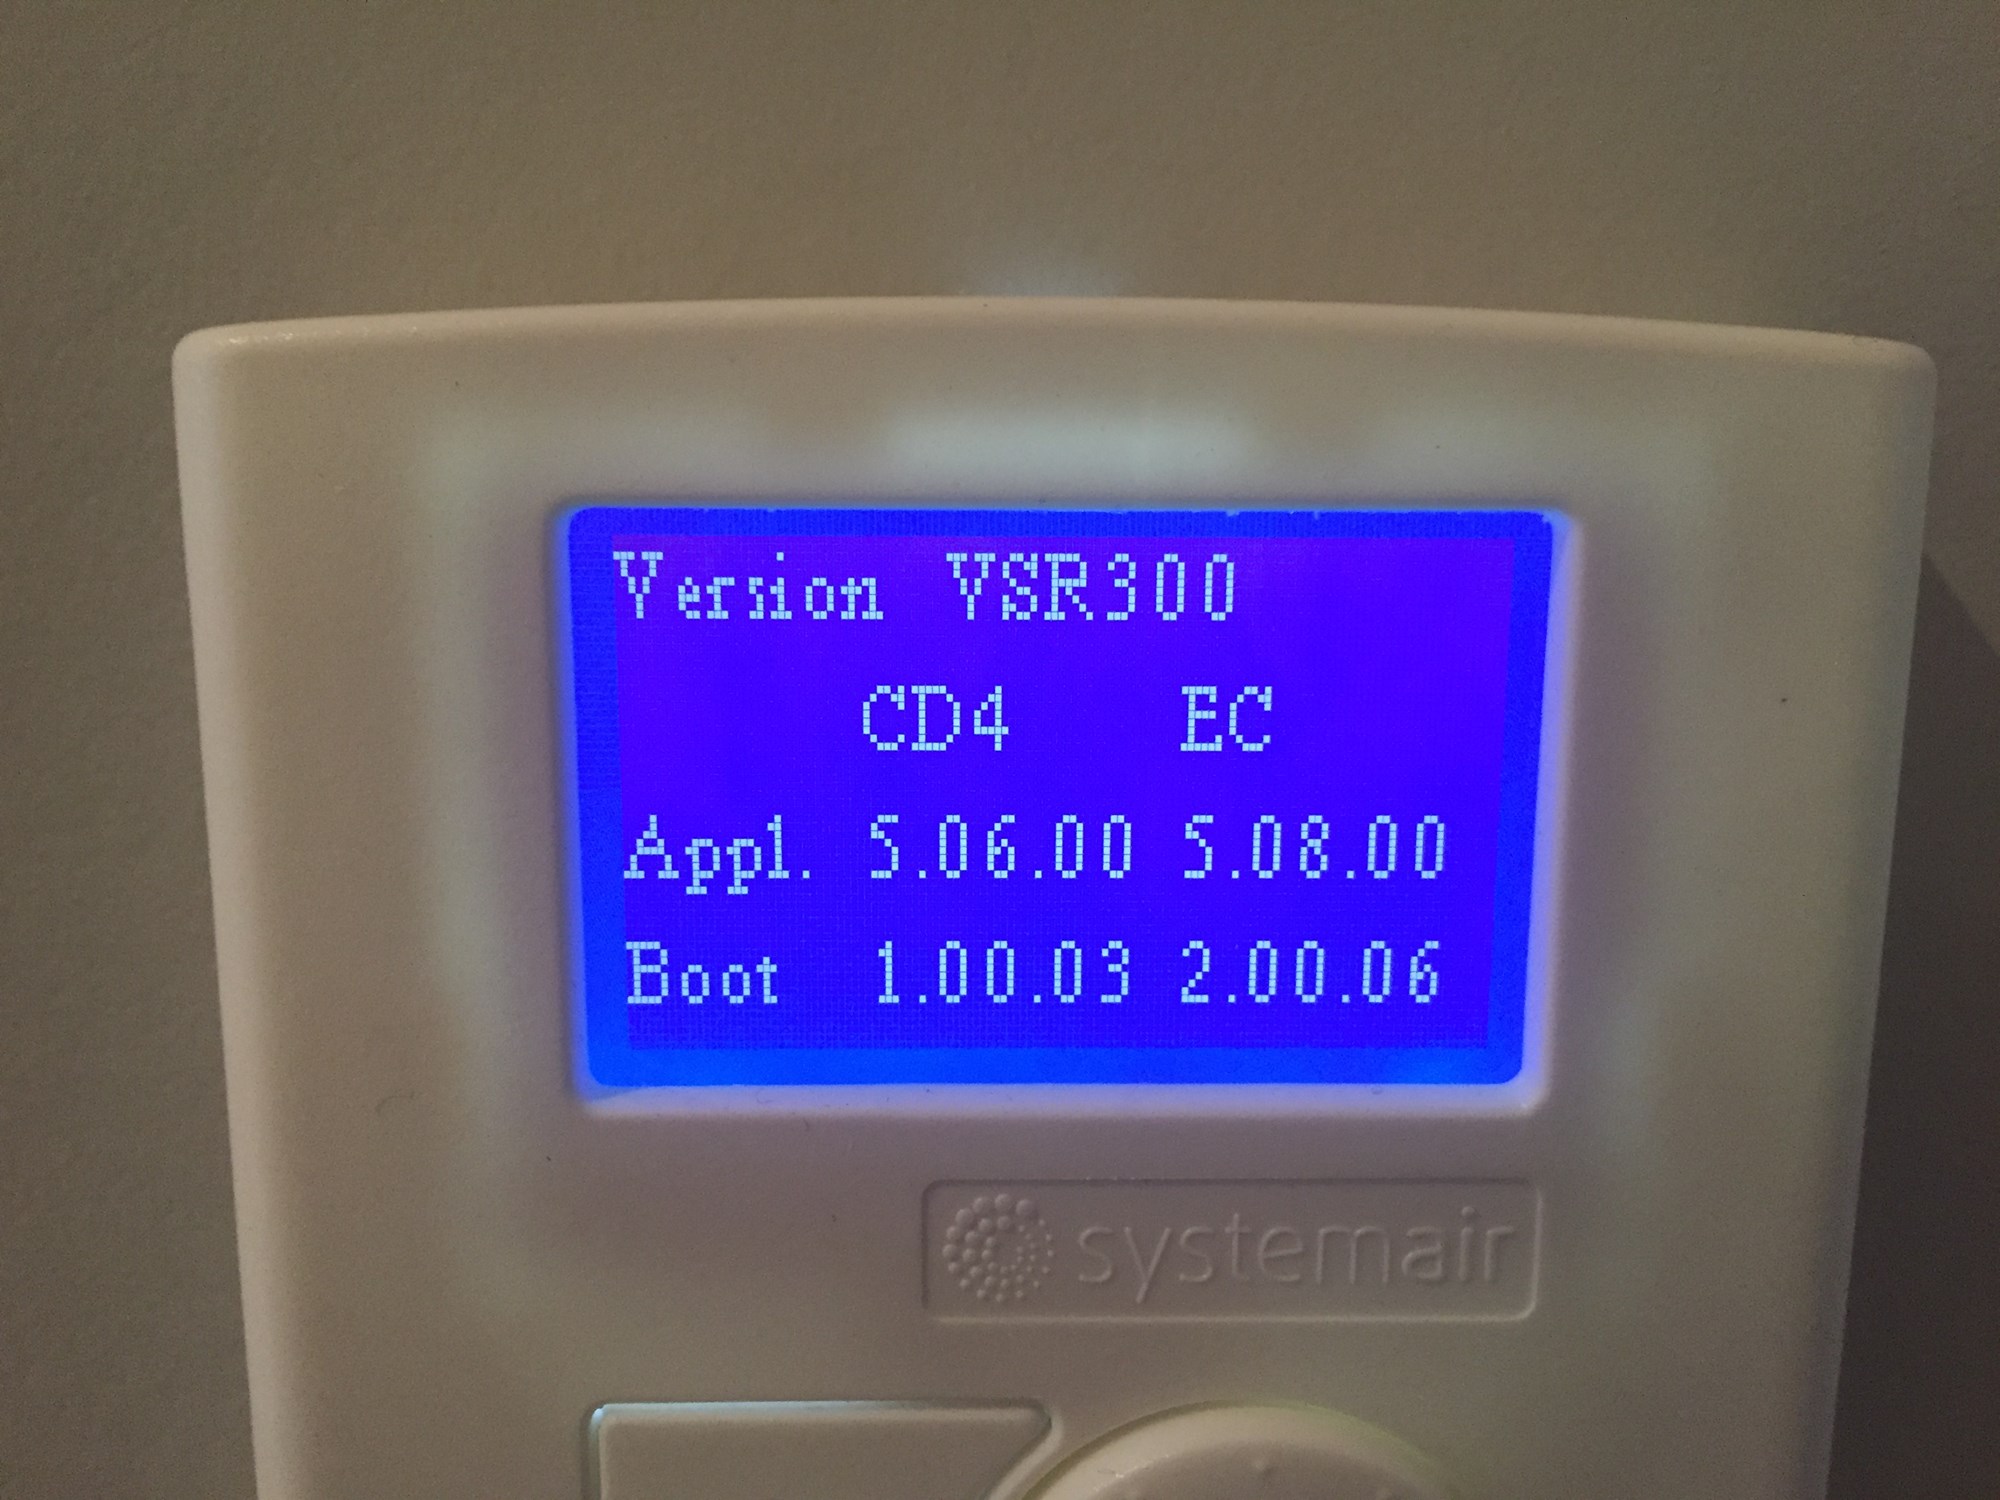 Trådløs styring og overvåking - Villavent VSR 500 - IMG_8805.JPG - frans85